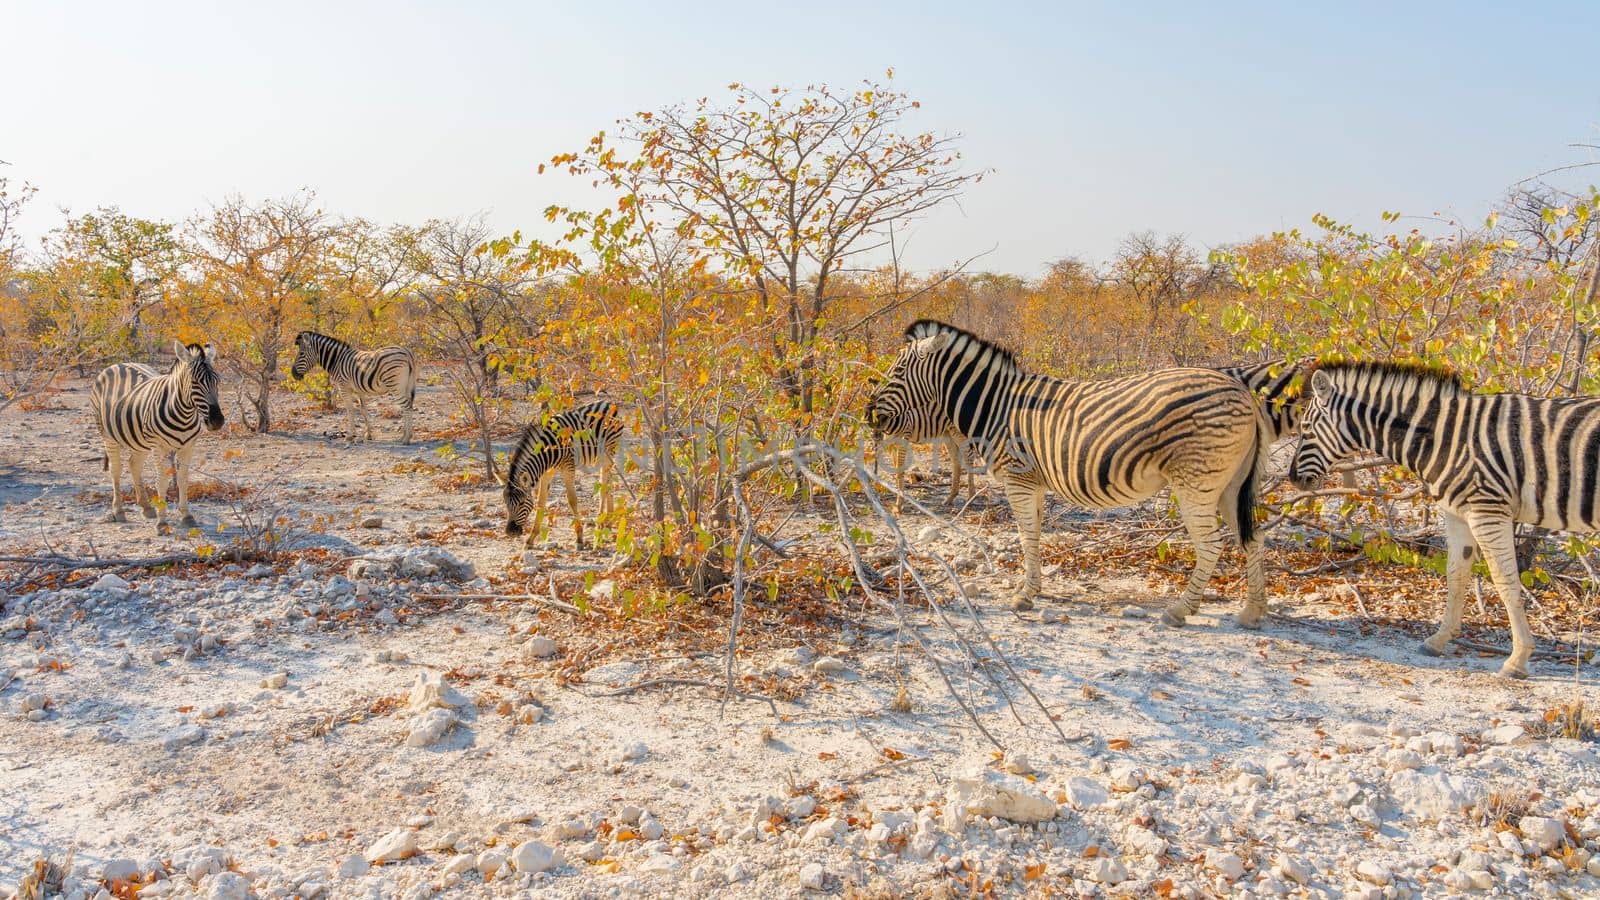 Zebras in the Etosha National Park, Namibia. by maramade